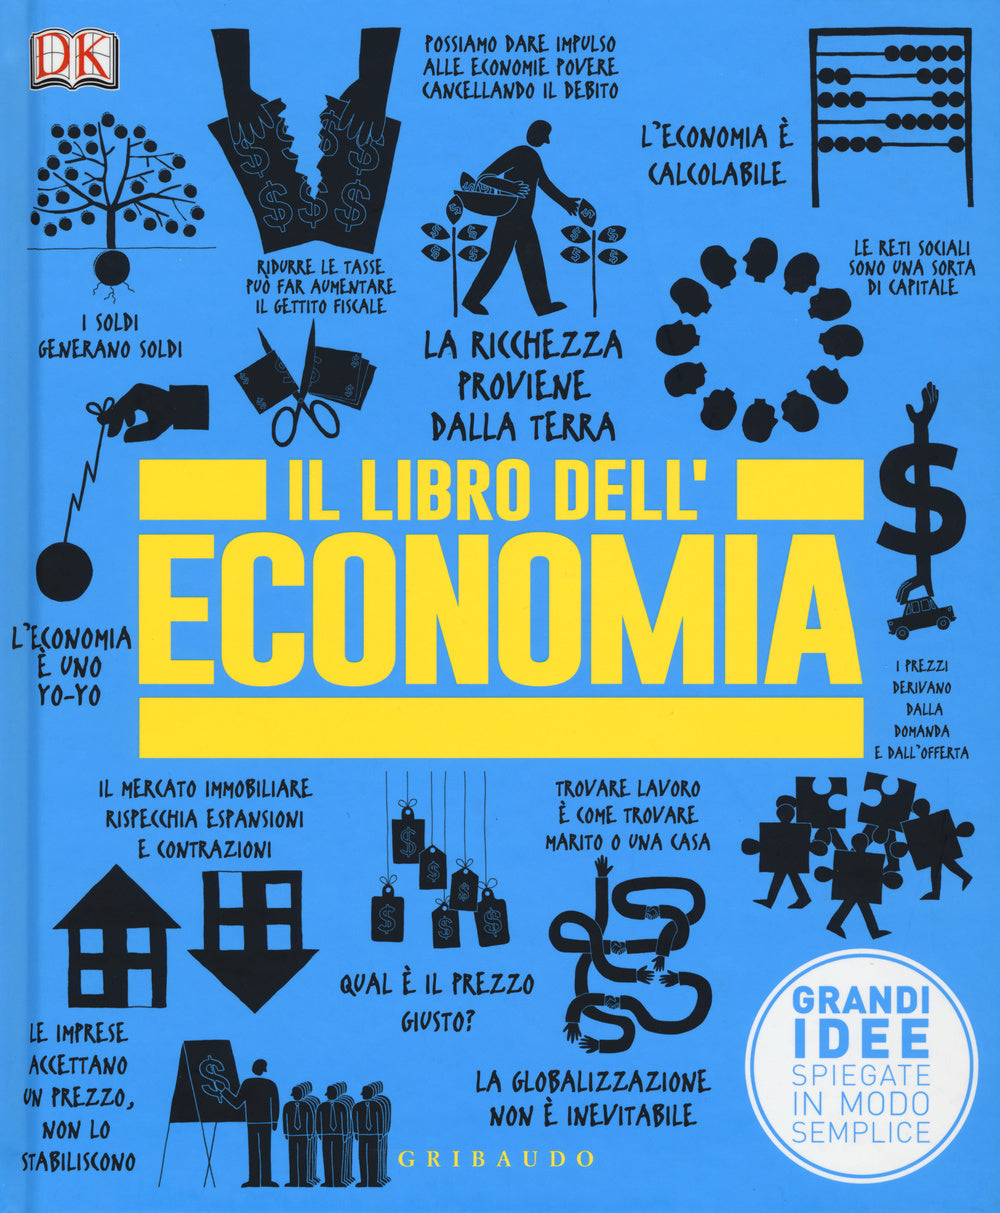 Il libro dell'economia. Grandi idee spiegate in modo semplice.